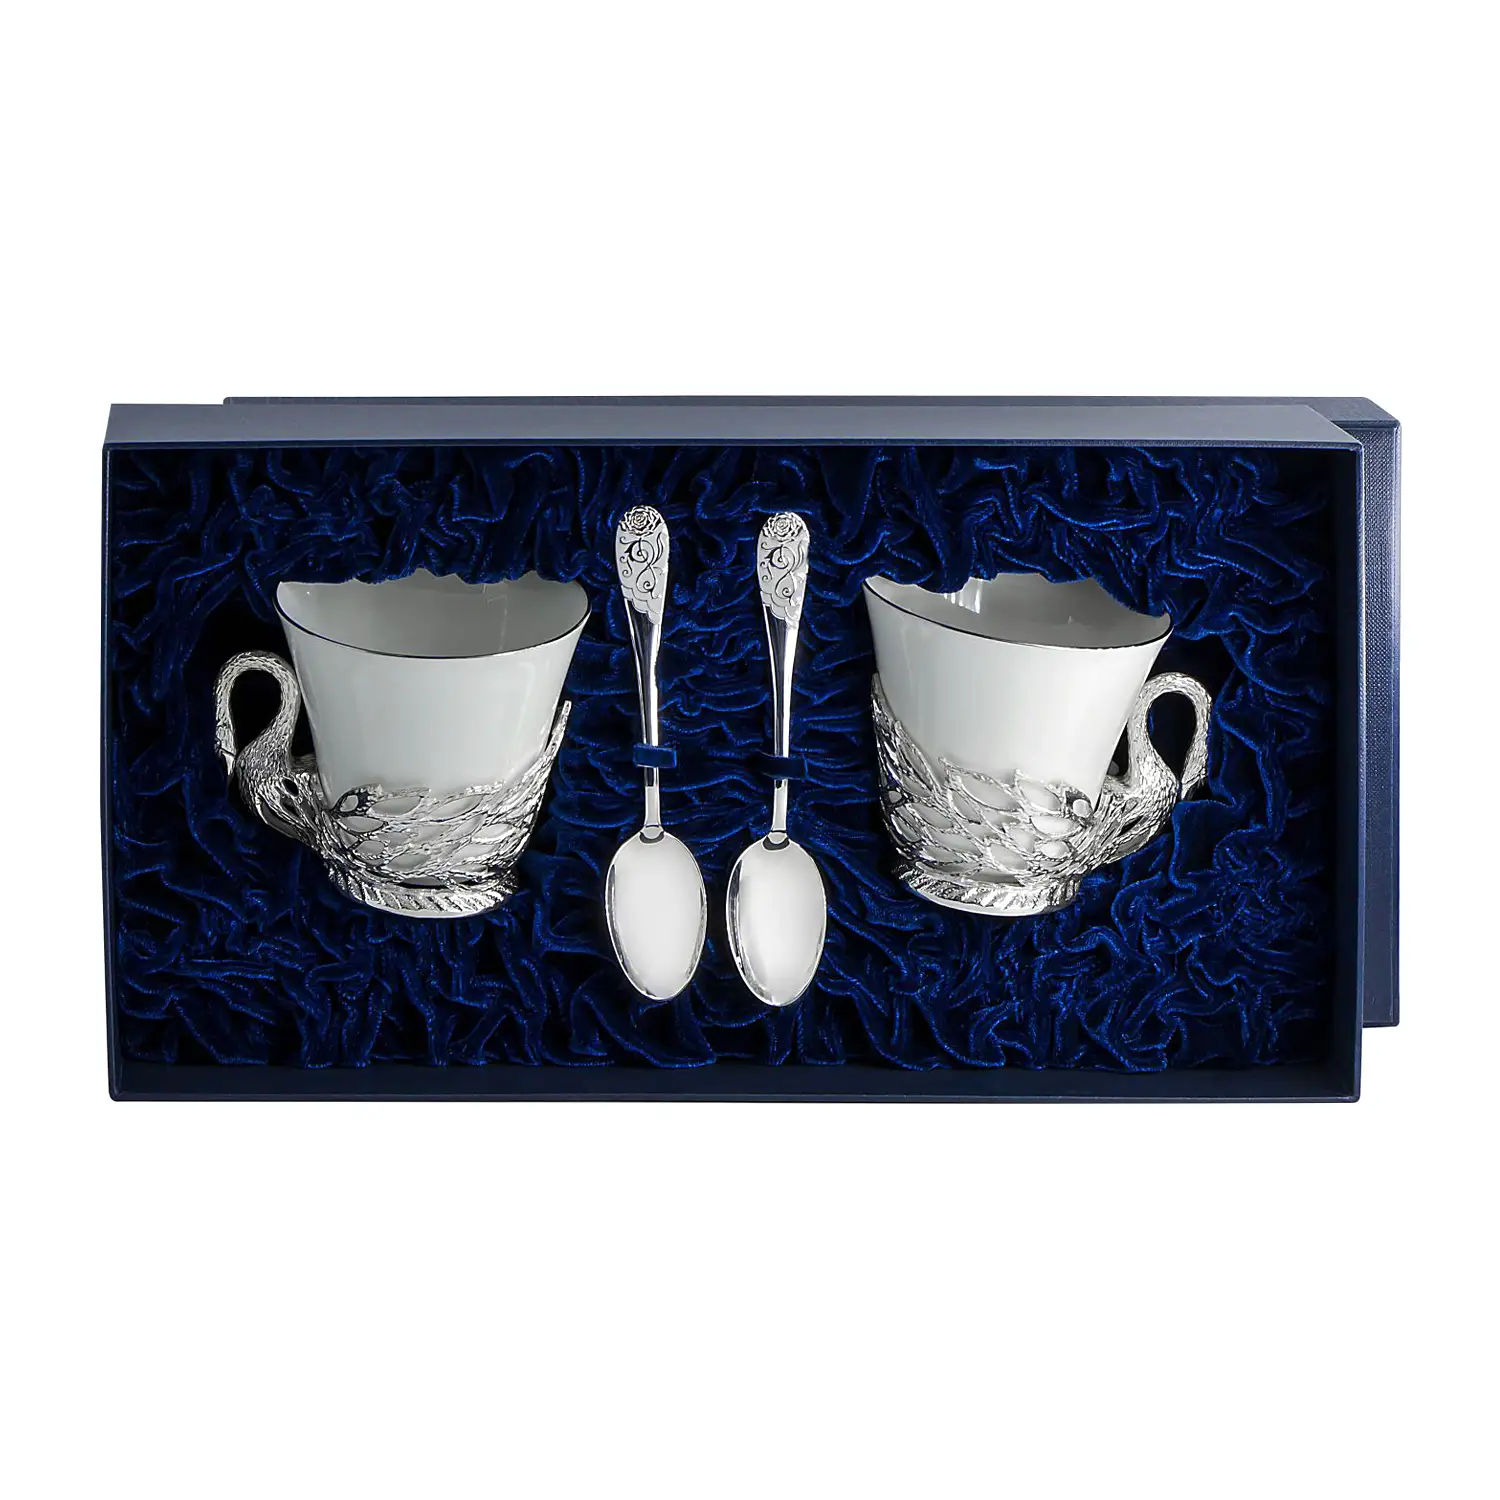 Набор чайных чашек Лебедь: ложка, чашка (Серебро 925) набор чайных чашек витая ложка чашка серебро 925